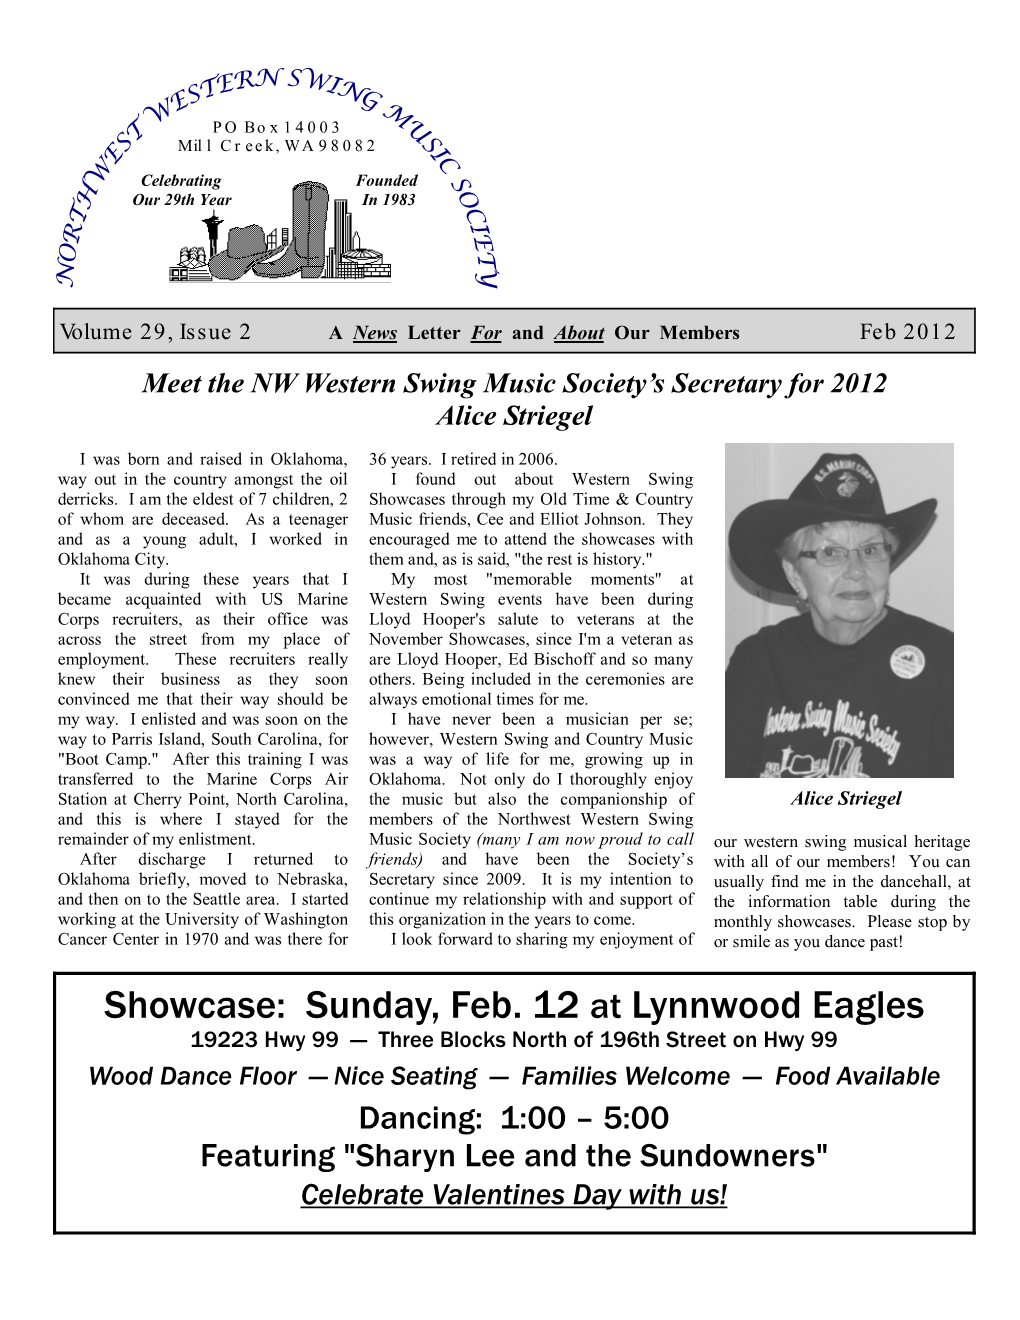 Sunday, Feb. 12 at Lynnwood Eagles 19223 Hwy 99 — Three Blocks North of 196Th Street on Hwy 99